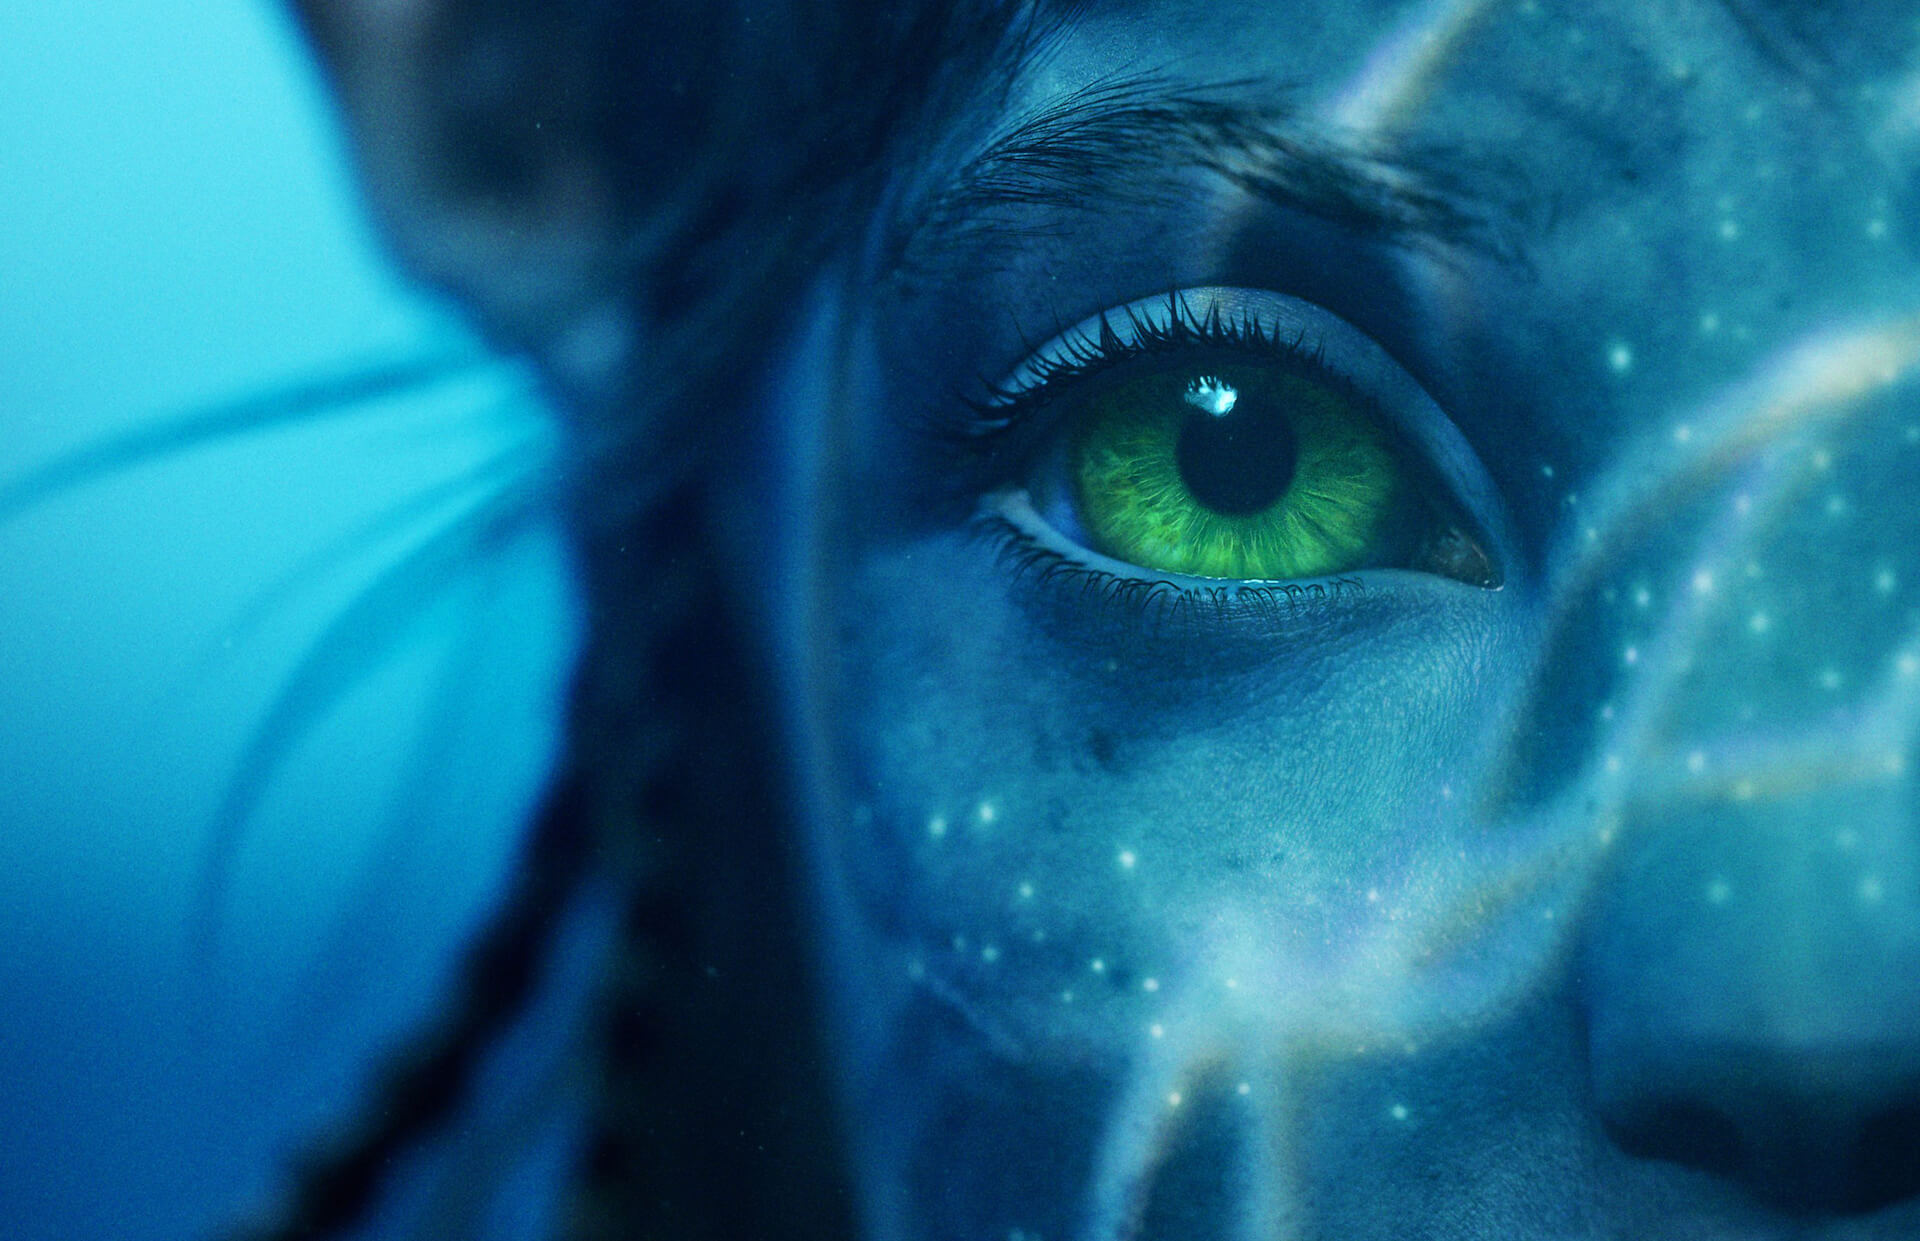 Sigourney Weaver az Avatar: A víz útja című filmben játszott “bolondos” szerepéről mesélt